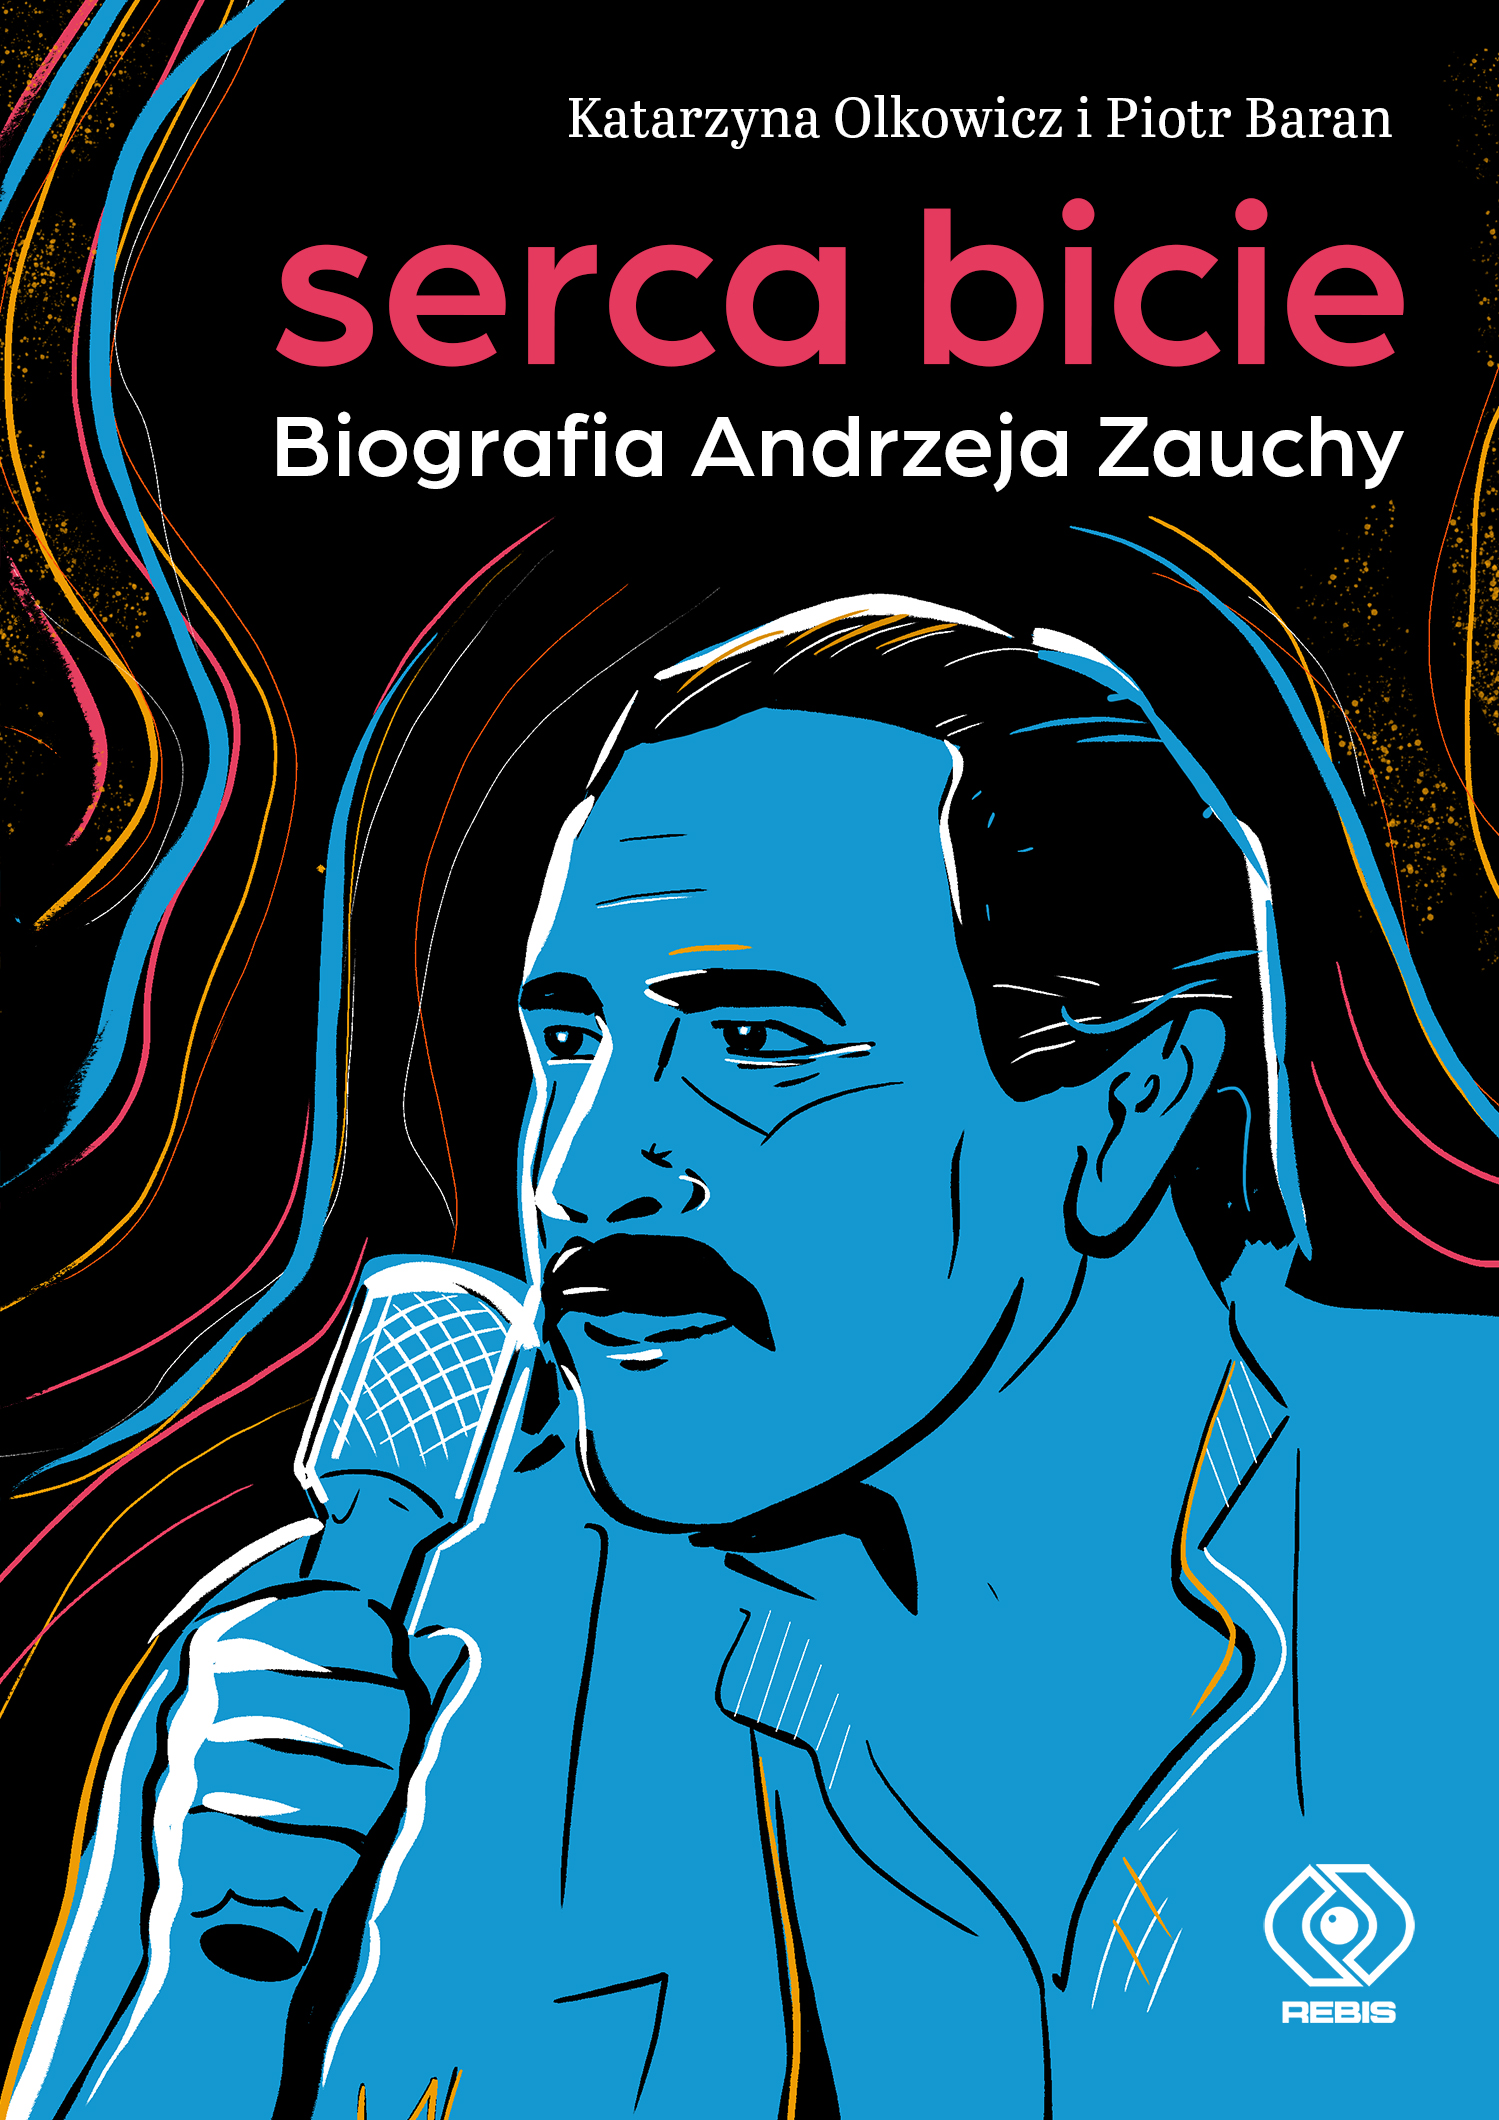 "Serca bicie" biografia Andrzeja Zauchy! 